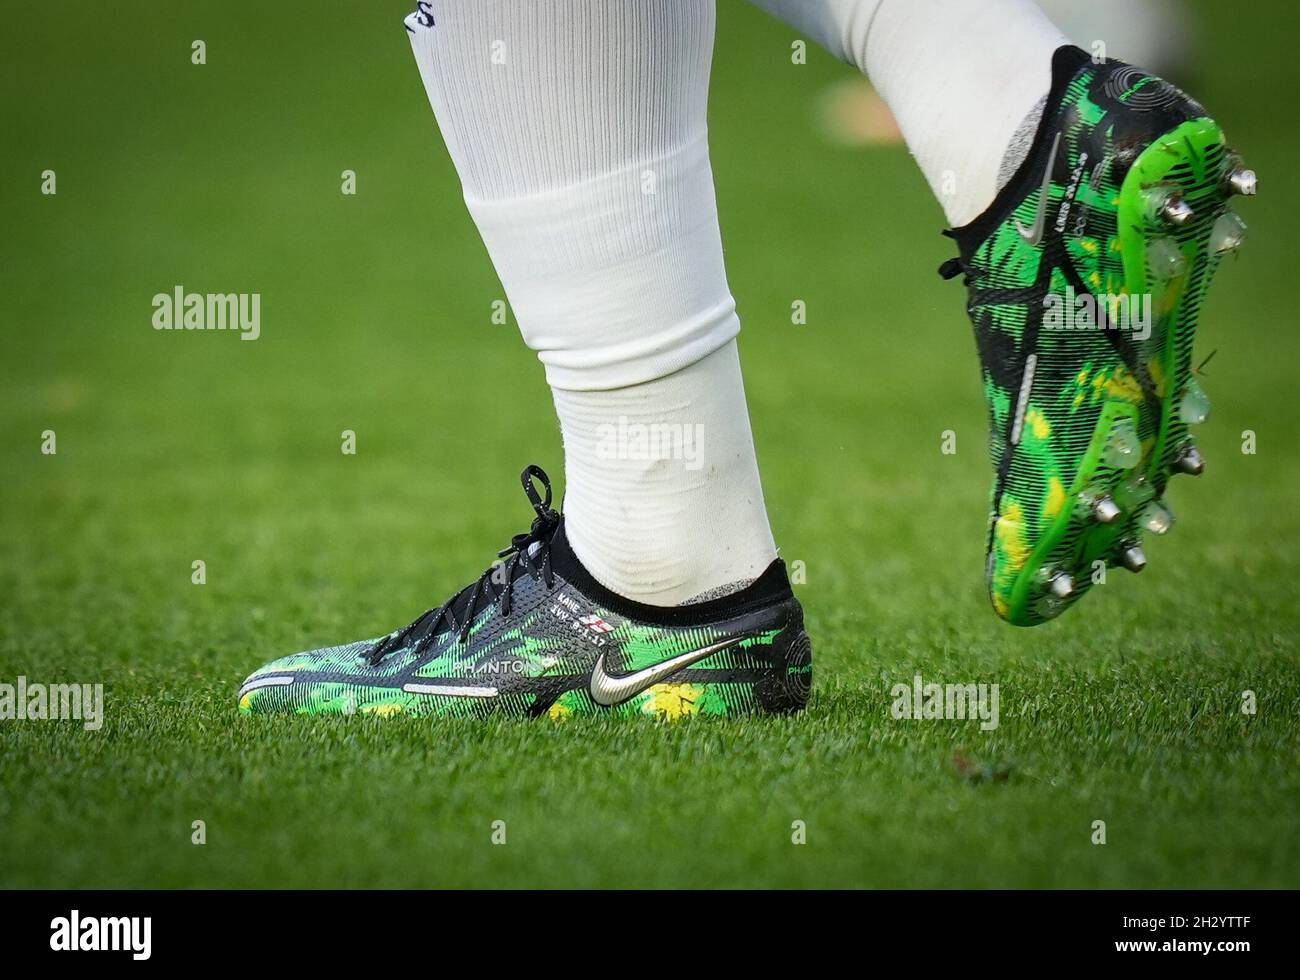 Londra, Regno Unito. 24 ottobre 2021. Le scarpe da calcio Nike Phantom  personalizzate di Harry Kane of Spurs durante la partita della Premier  League tra West Ham United e Tottenham Hotspur all'Olympic